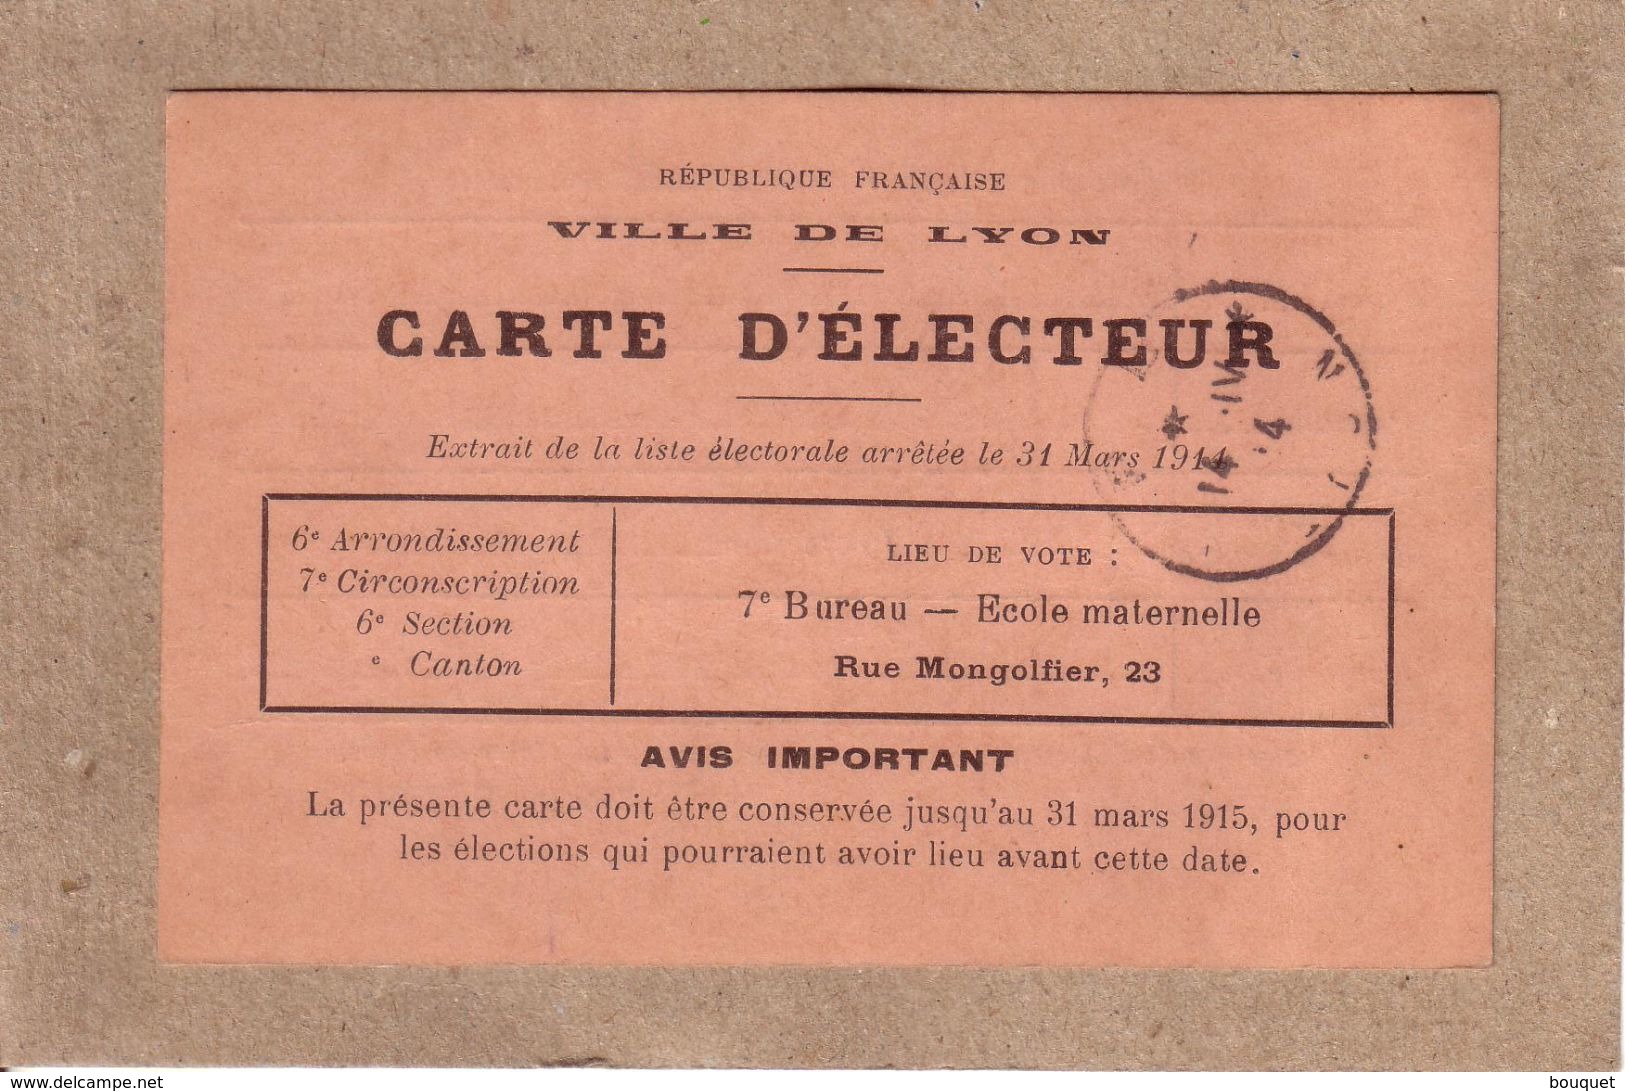 RHÔNE - LYON - CARTE D' ELECTEUR , AVRIL 1914 , MR ANTOINE MILLET , NE EN 1842 , NEGOCIANT , 97 RUE VENDOME , LYON - Documents Historiques